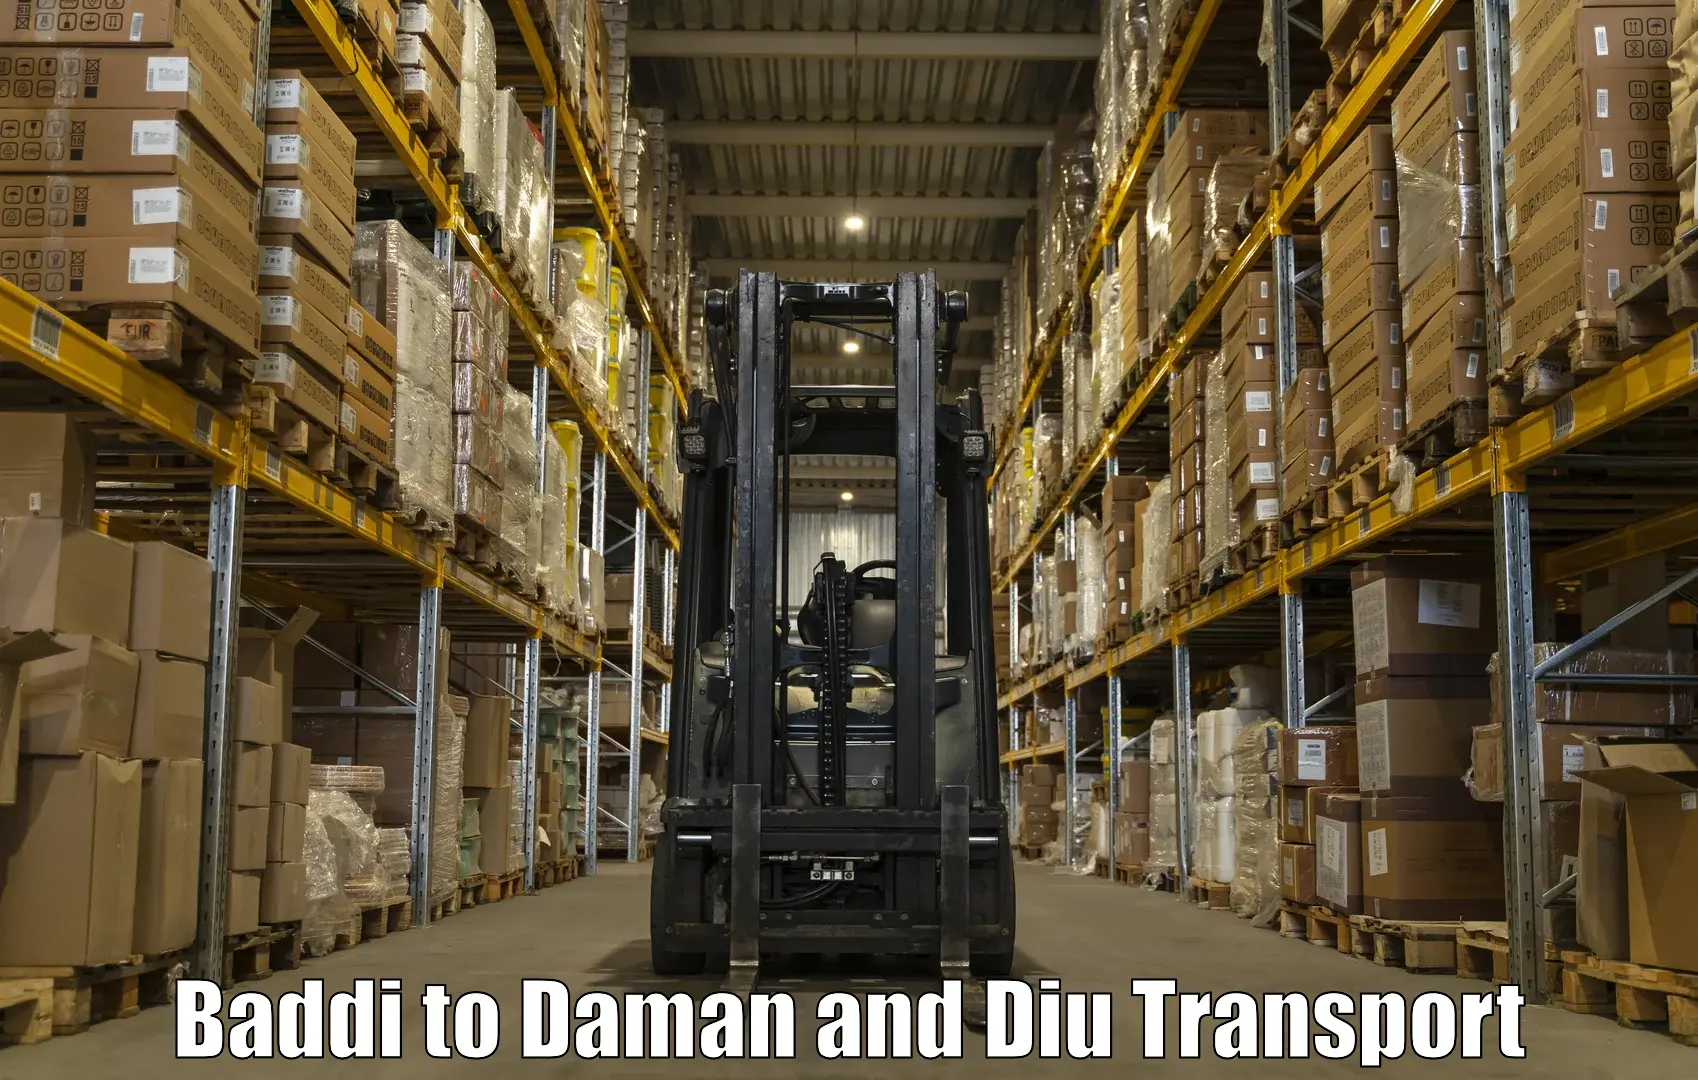 Furniture transport service Baddi to Diu